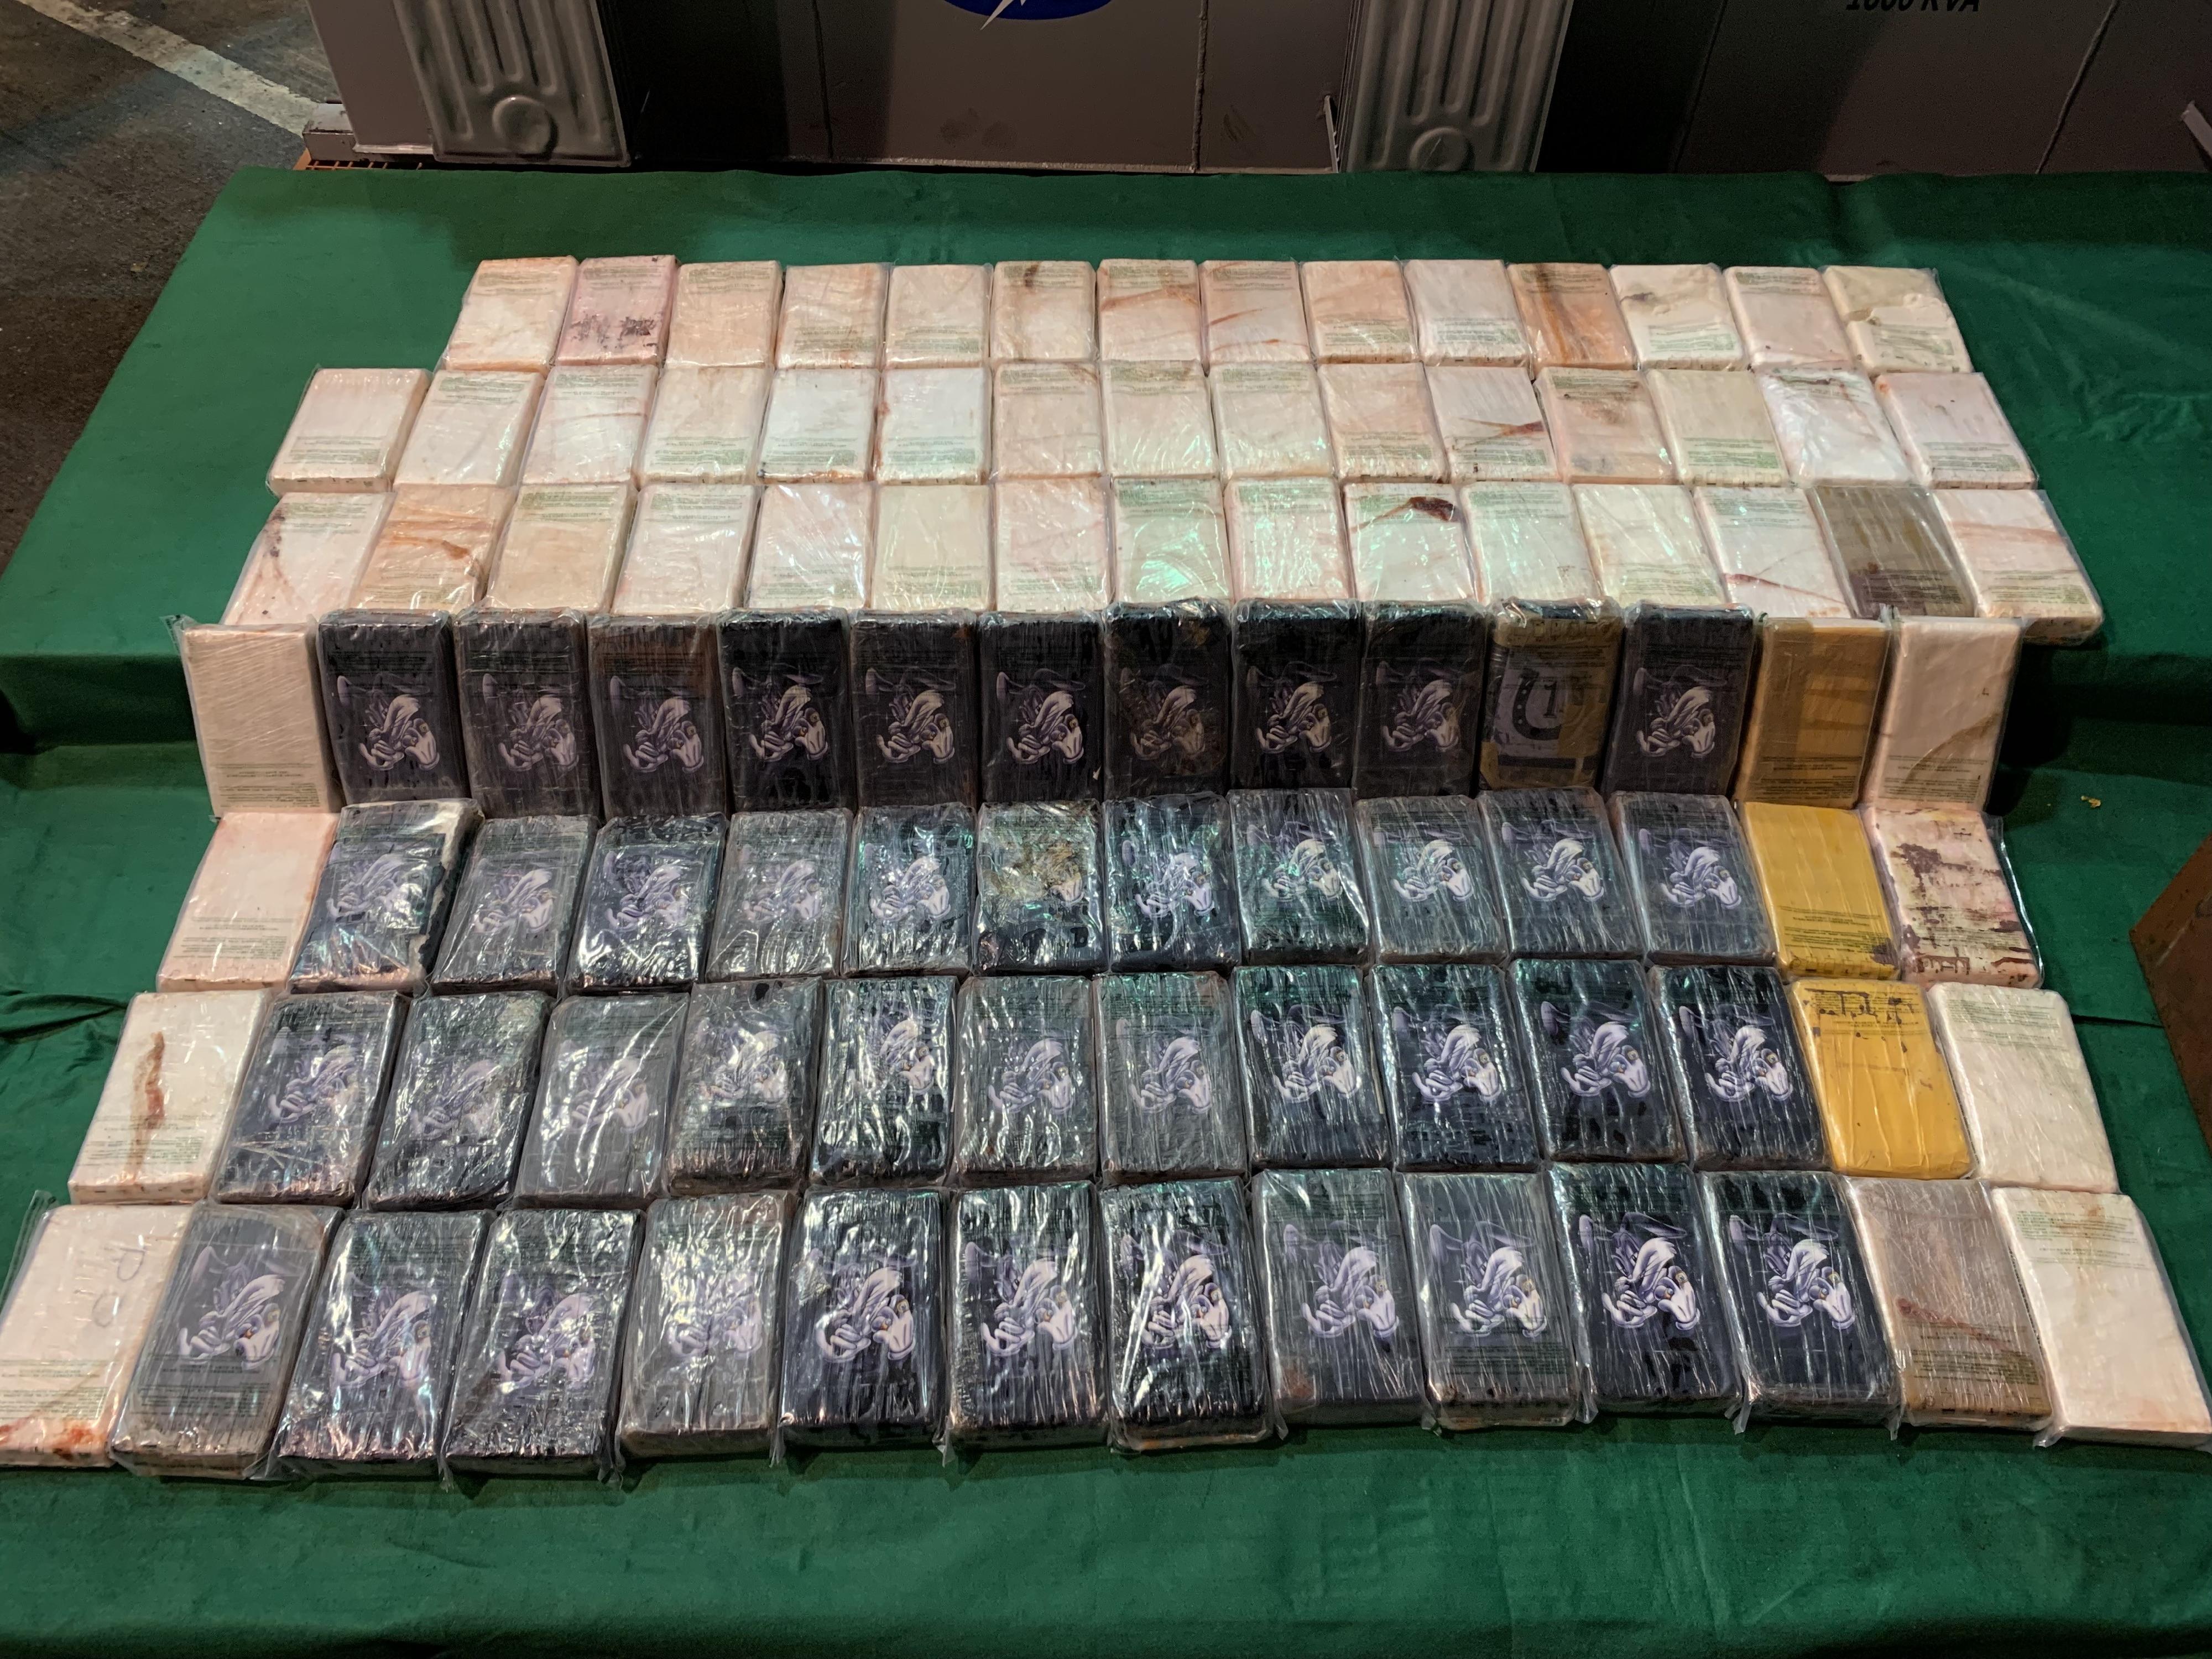 香港海關於上月偵破一宗涉嫌利用大型電力變壓器販運毒品的案件，檢獲約一百二十公斤懷疑可卡因，估計市值約一億一千萬元。圖示檢獲的懷疑可卡因。